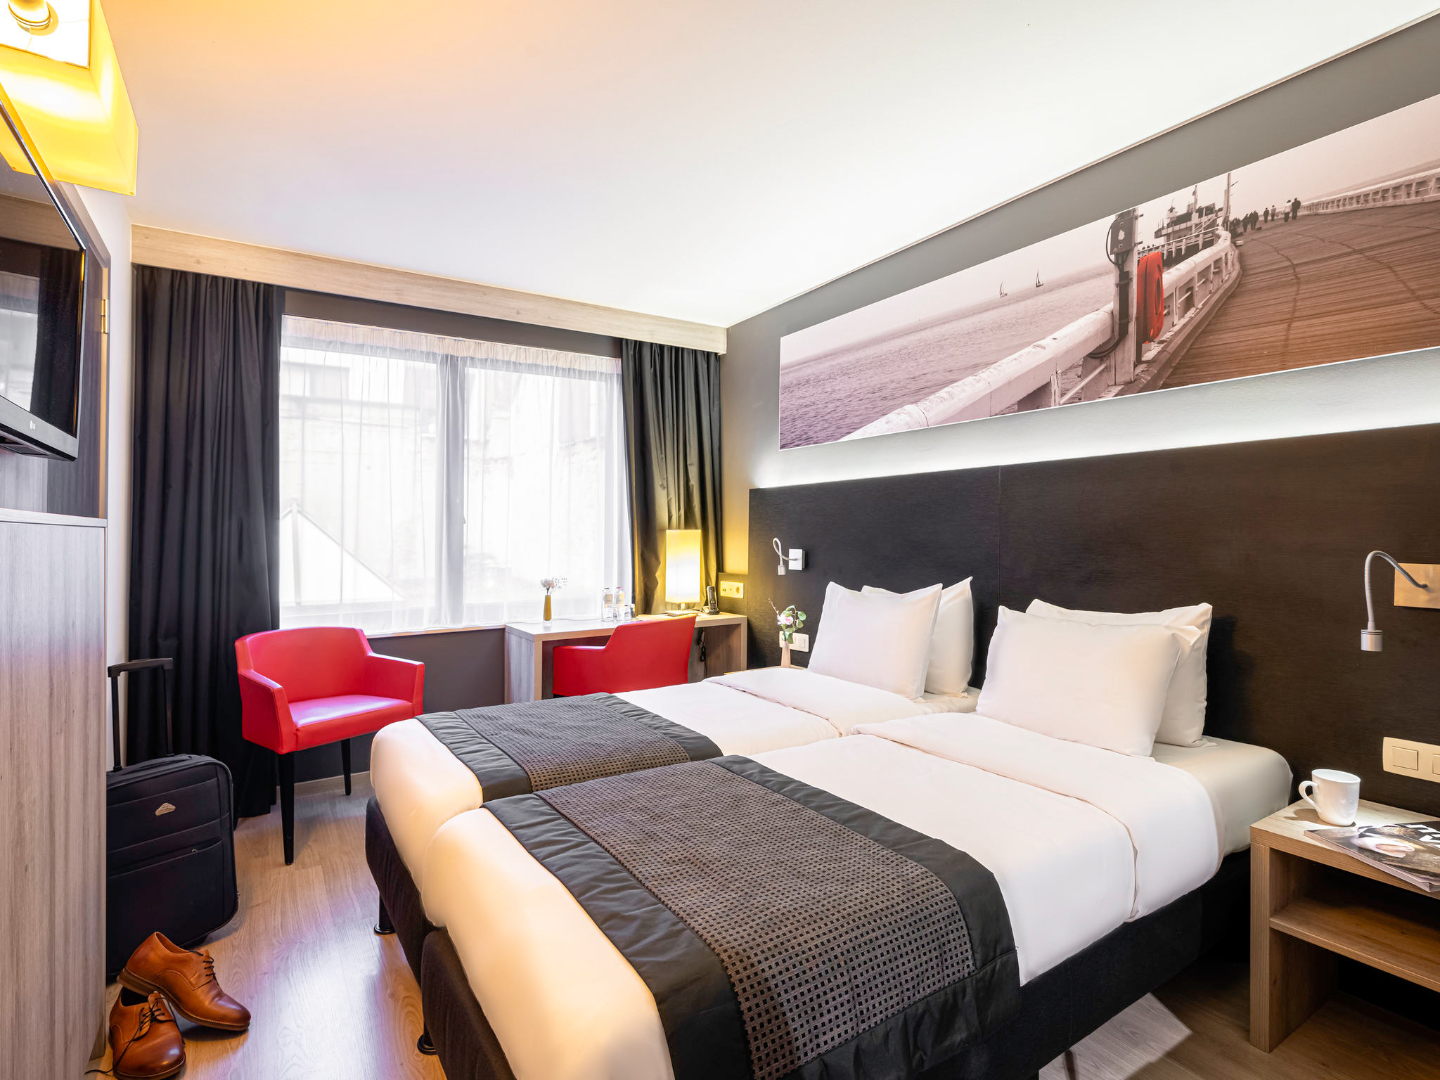 Hotelproject met bewezen opbrengsten in hartje Oostende 